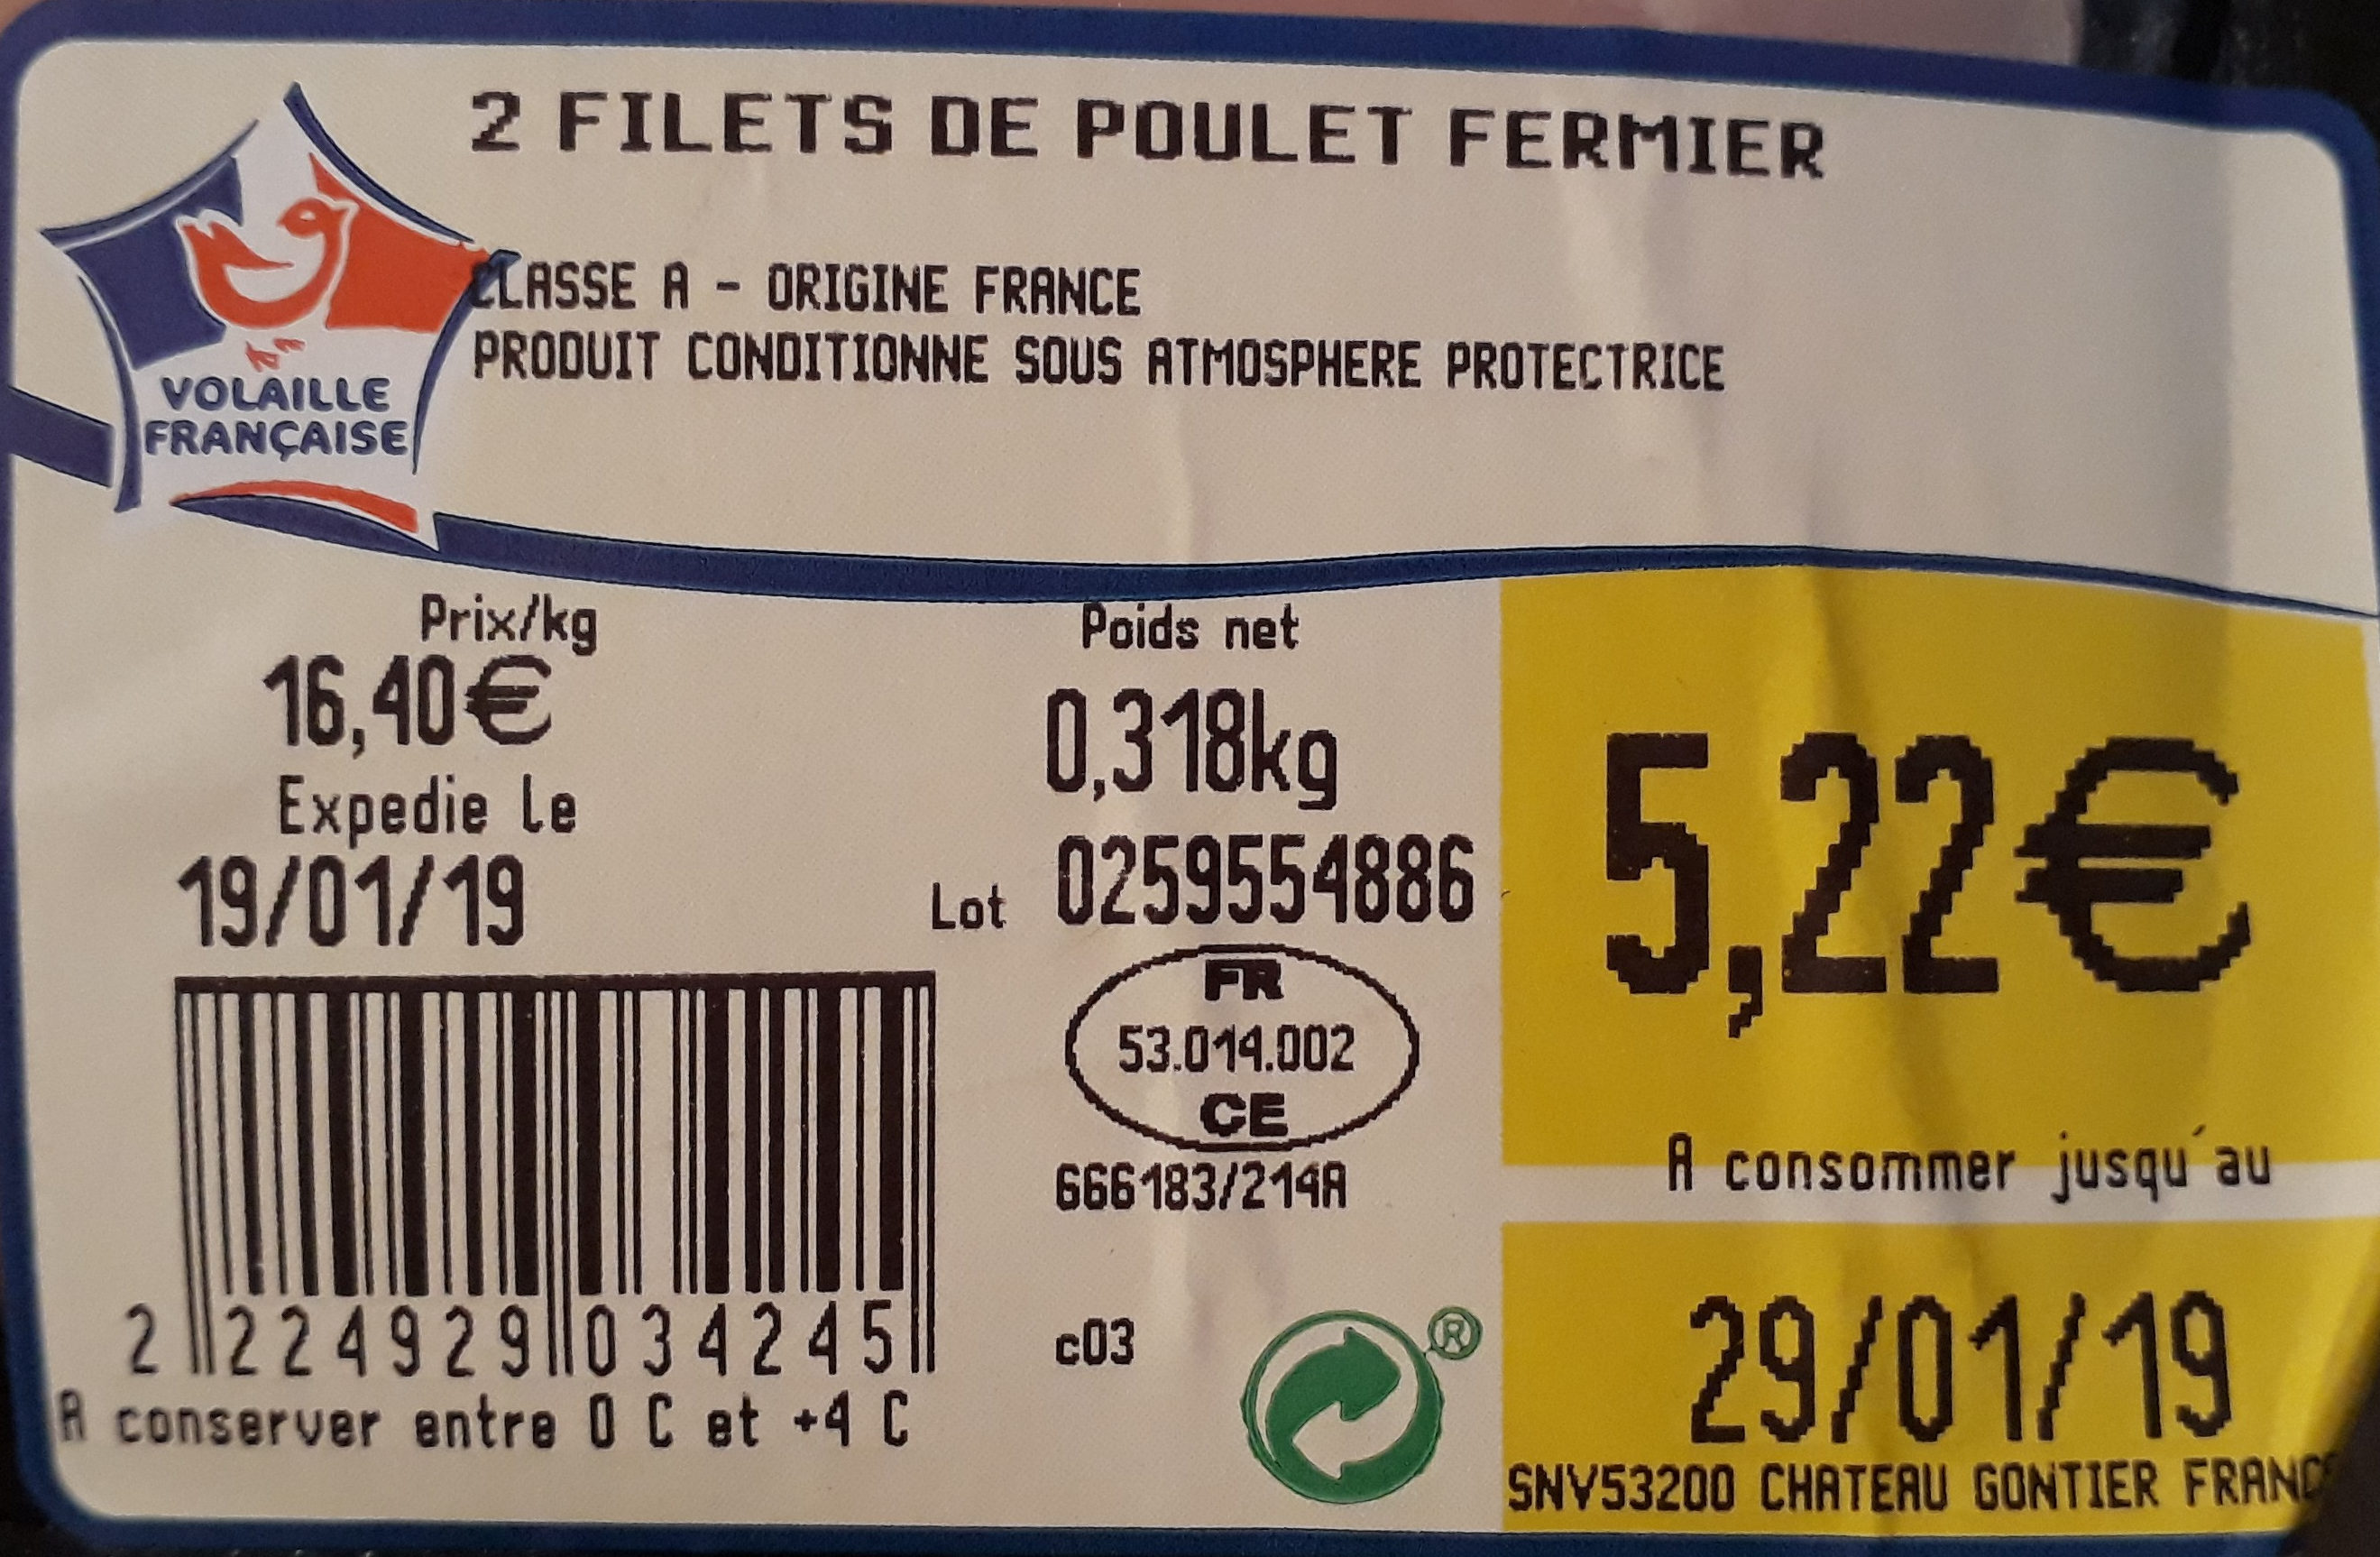 Filets de poulet fermier blanc - Ingredients - fr